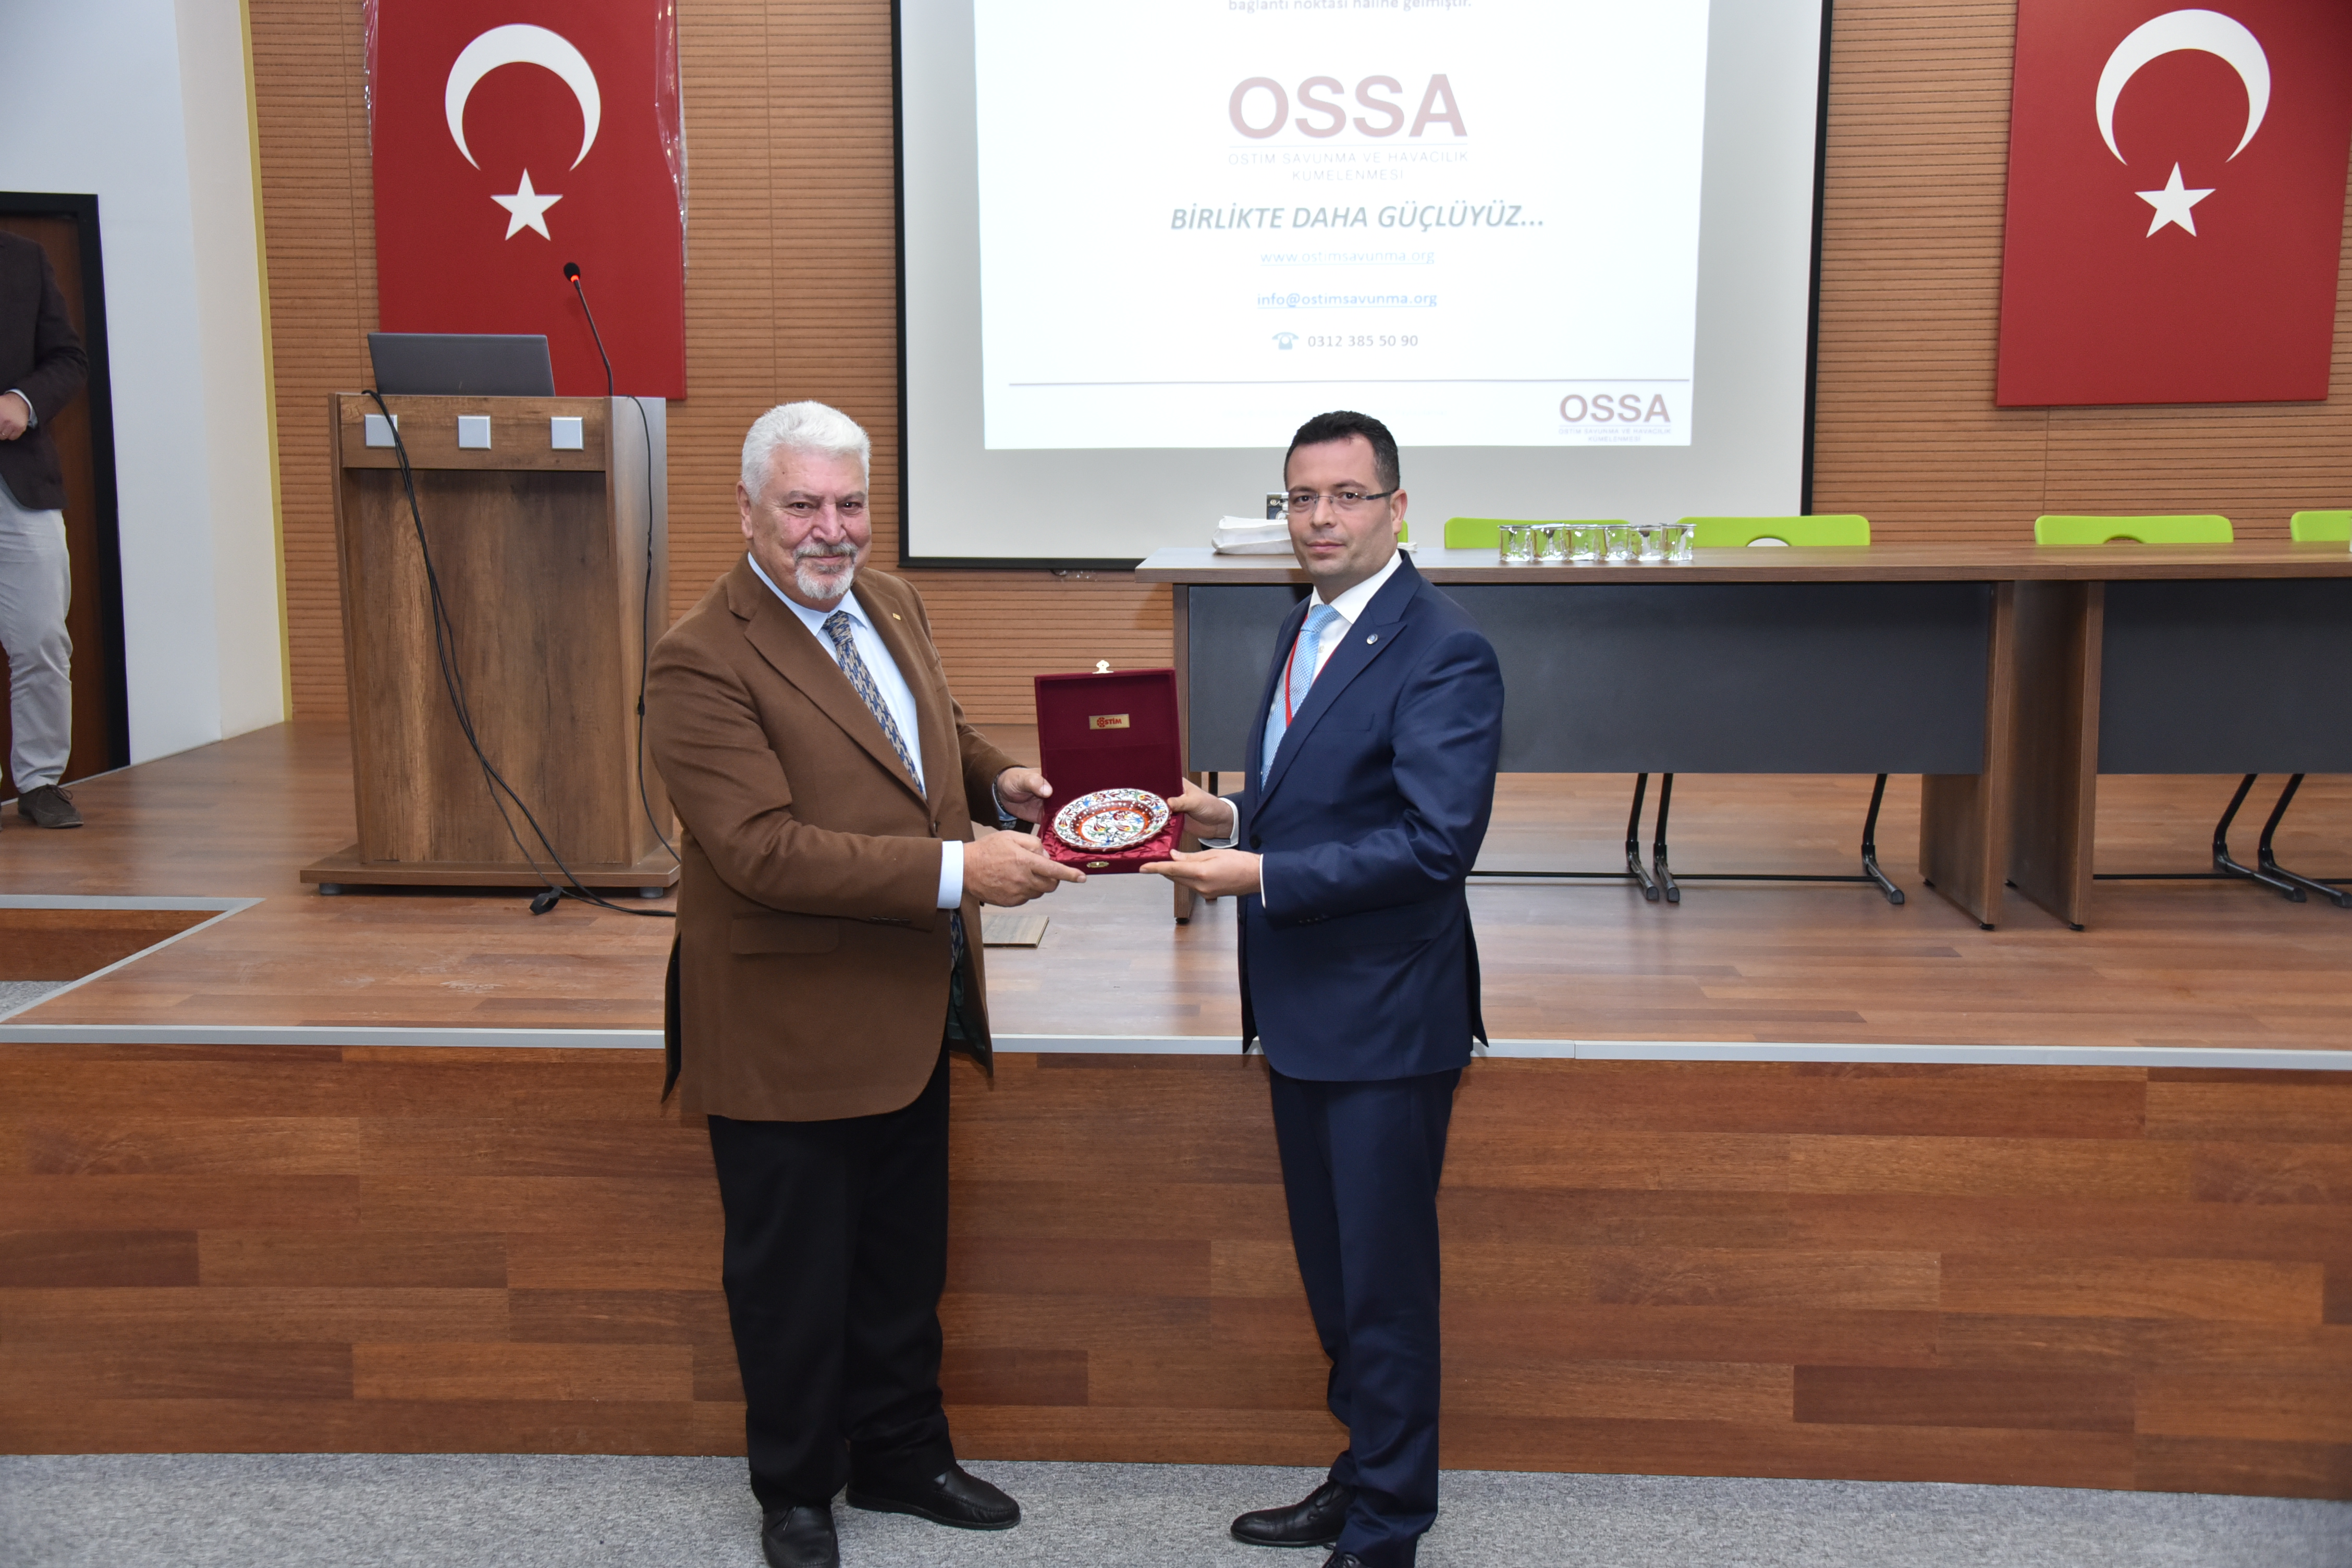 Gaziantep Sanayi Odası ile Birlikte İpekyolu Kalkınma Ajansı ve Gaziantepli Sanayicilerimiz OSSA'yı Ziyaret Etti